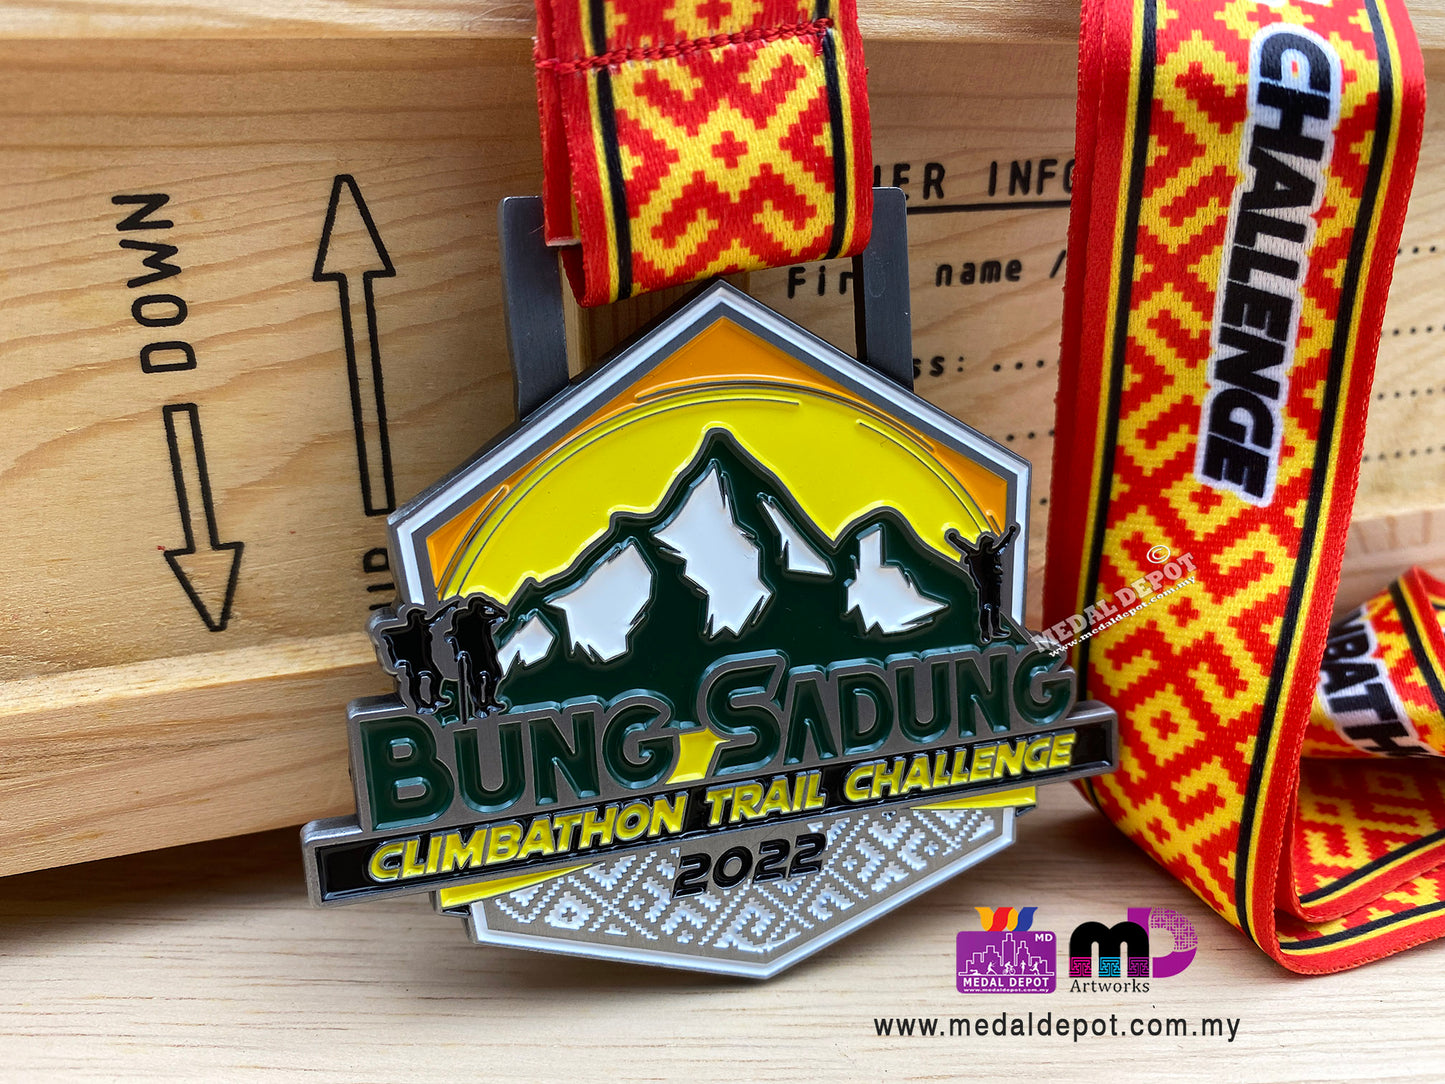 Bung Sadung Climbathon Trail Challenge 2022 medal